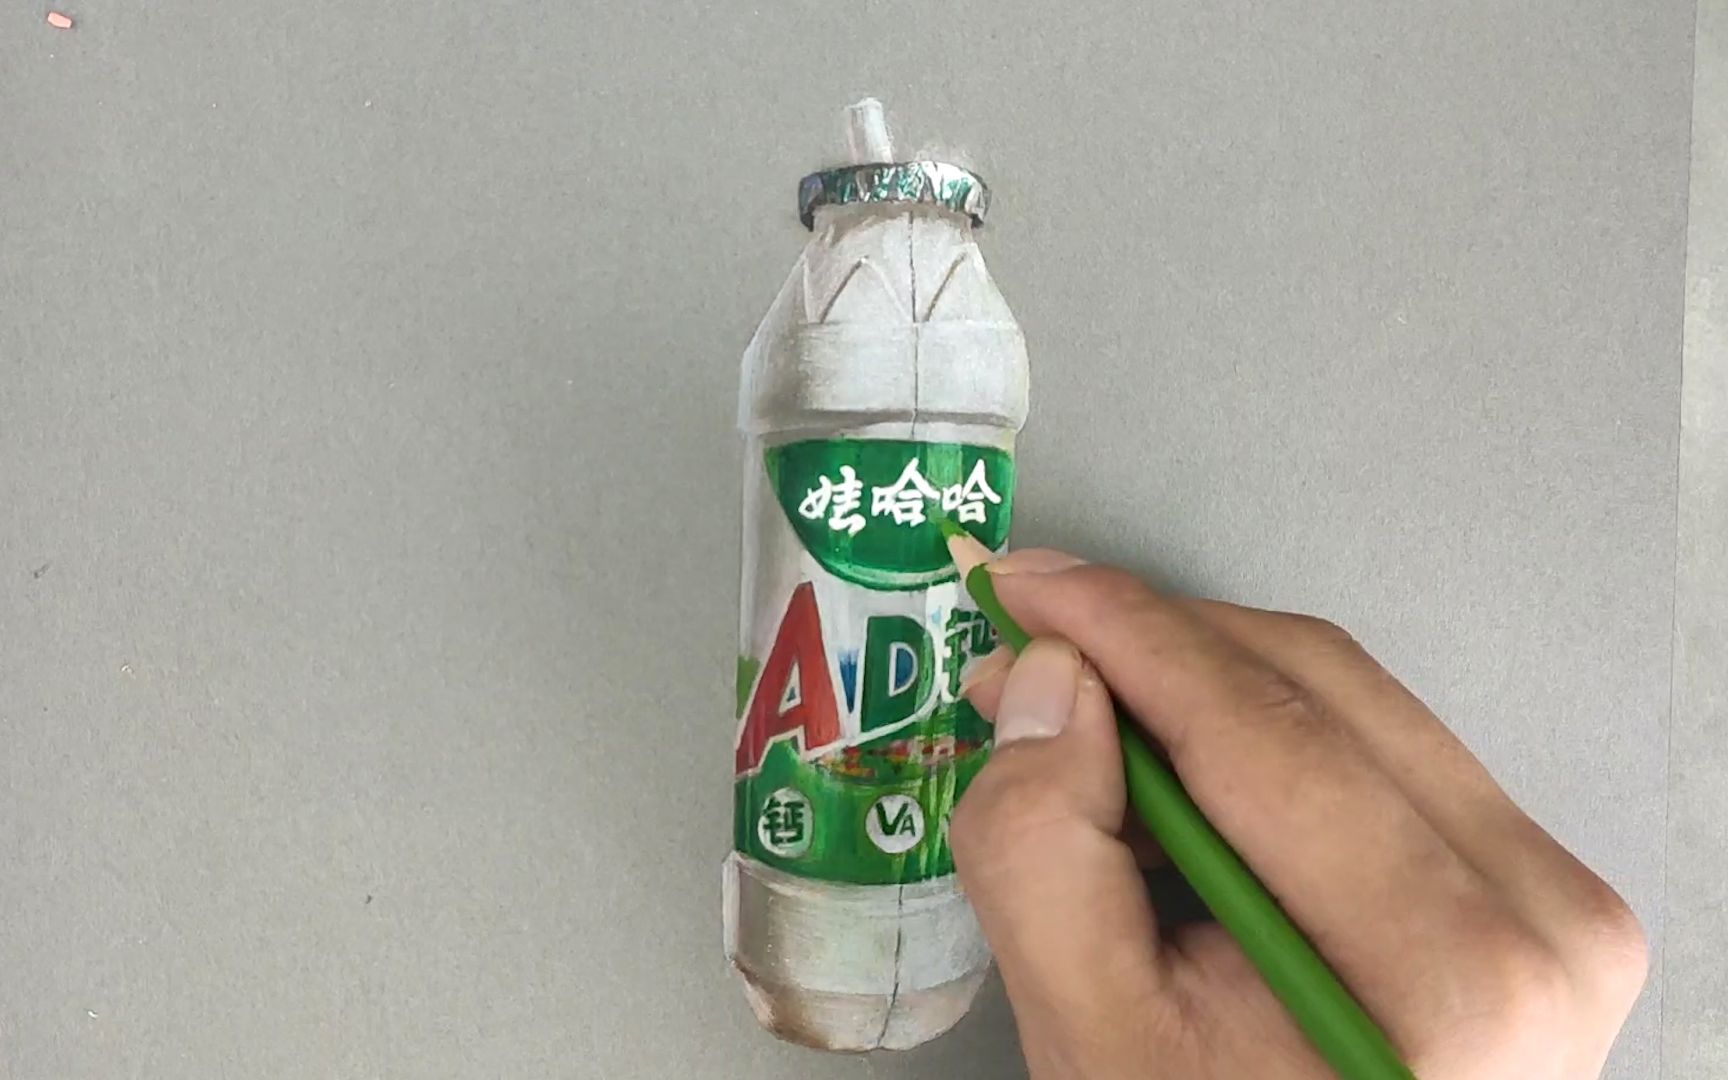 彩铅手绘画娃哈哈ad钙奶的瓶子